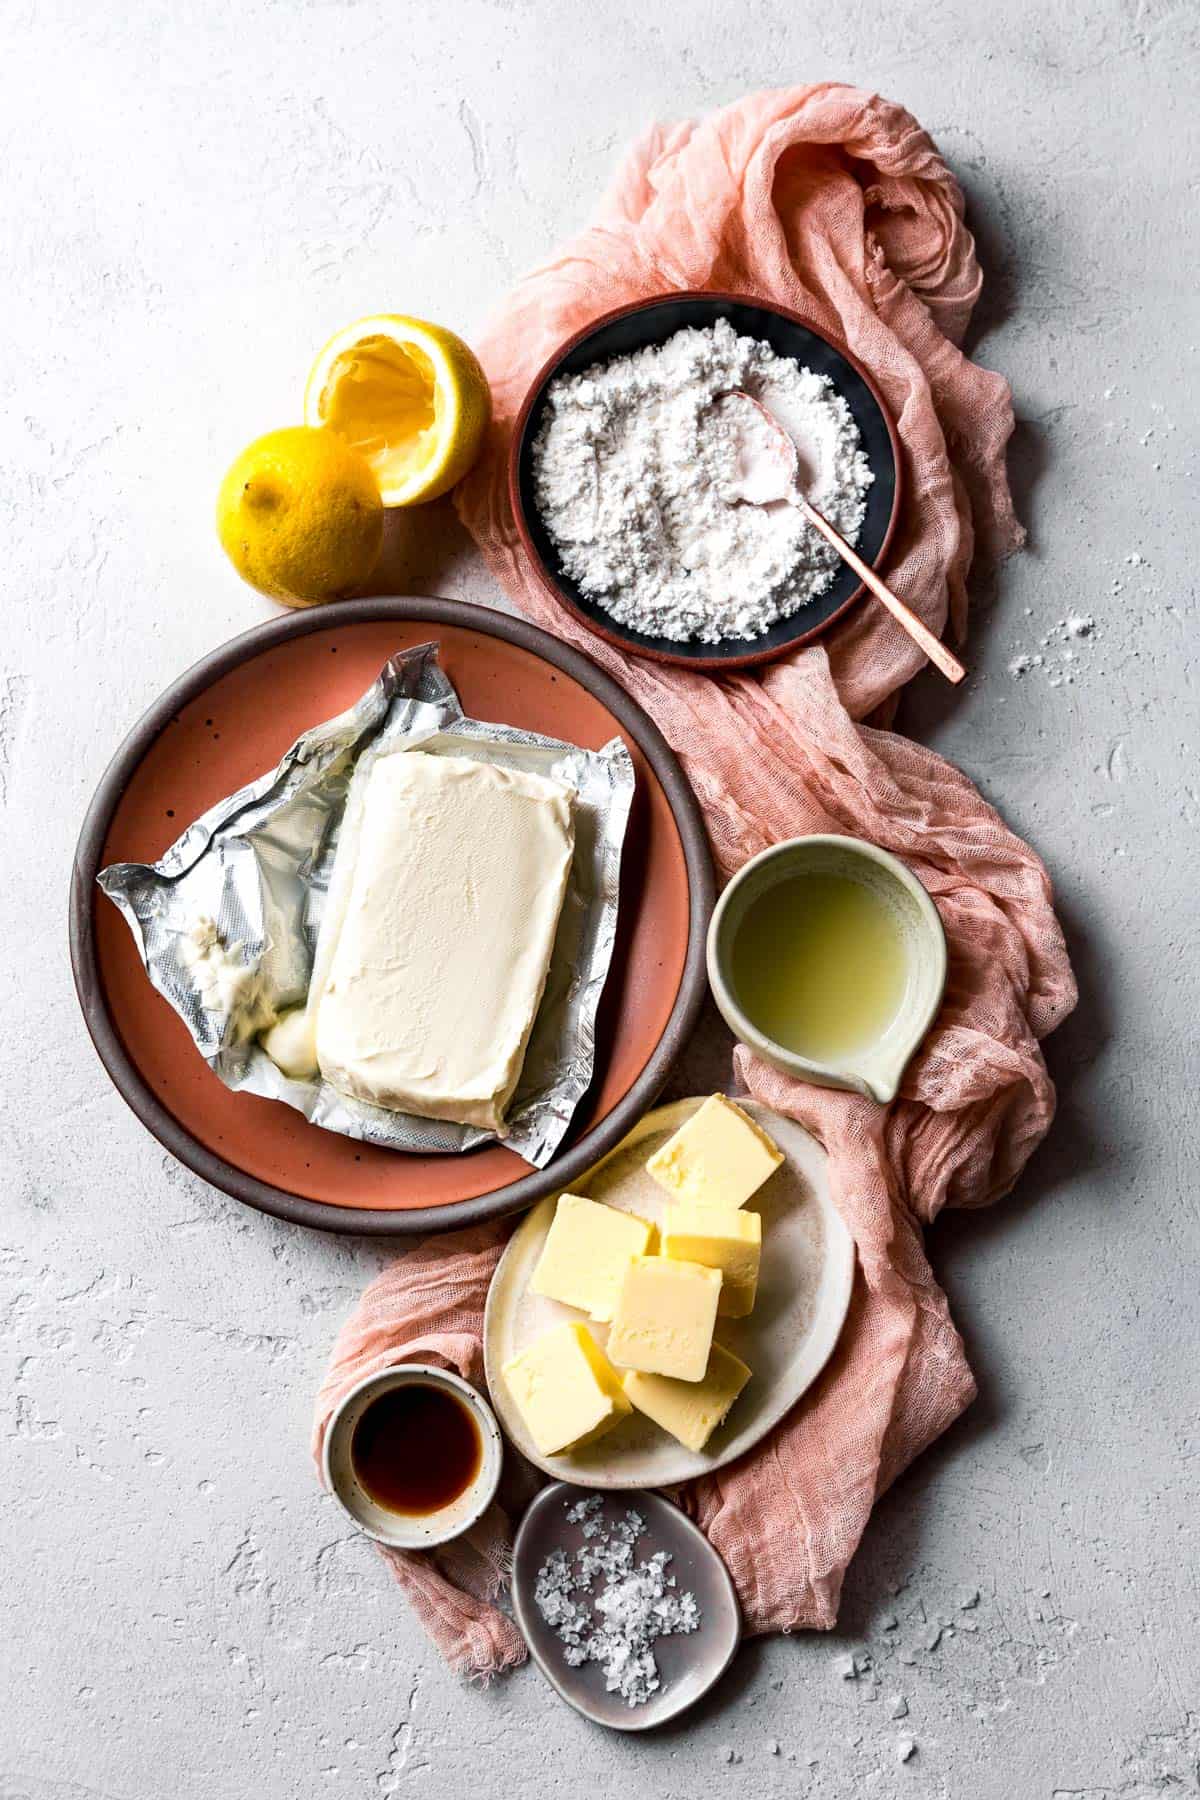 Understanding the Ingredients in Cream Cheese